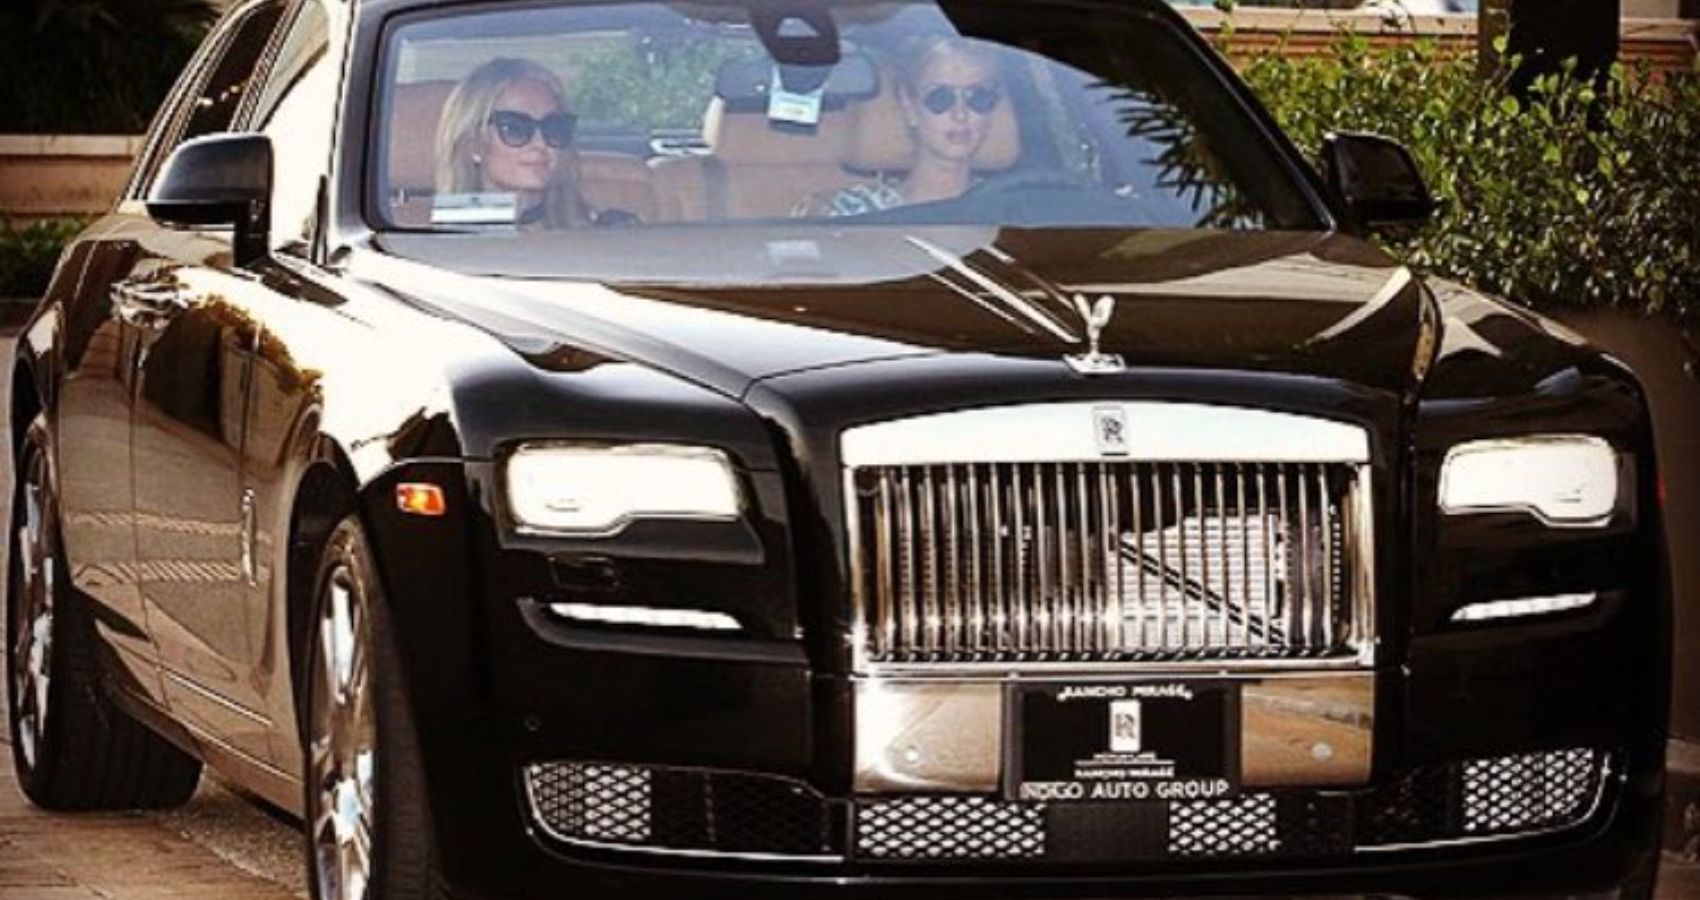 Cruising around town with Nicky Hilton